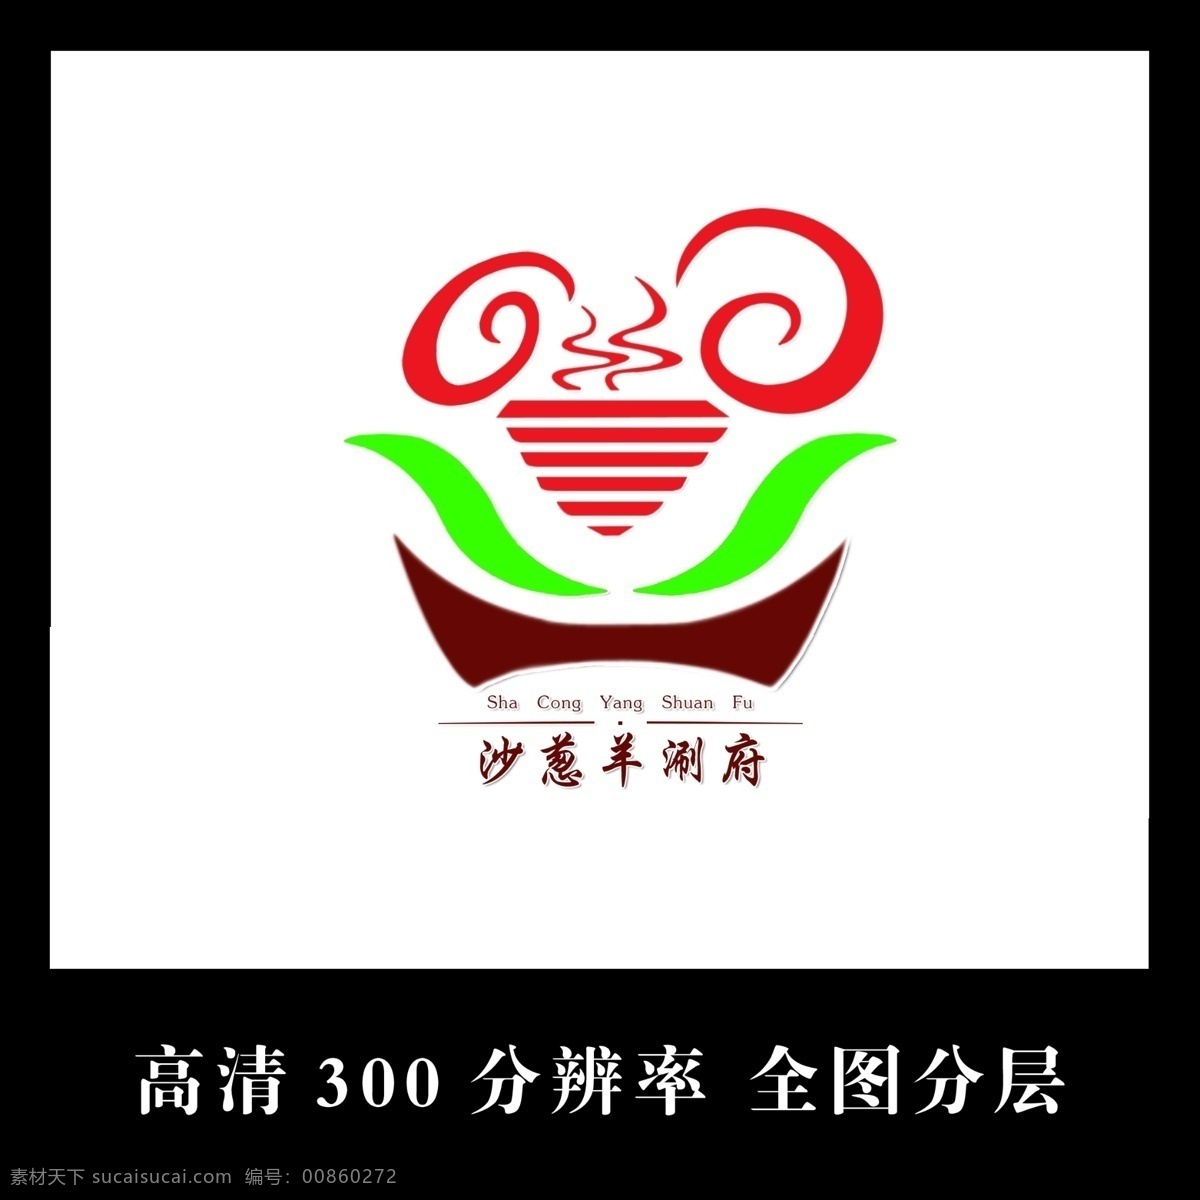 涮府logo logo 沙葱 沙葱羊 火锅logo 羊logo 羊 高清logo 火锅店